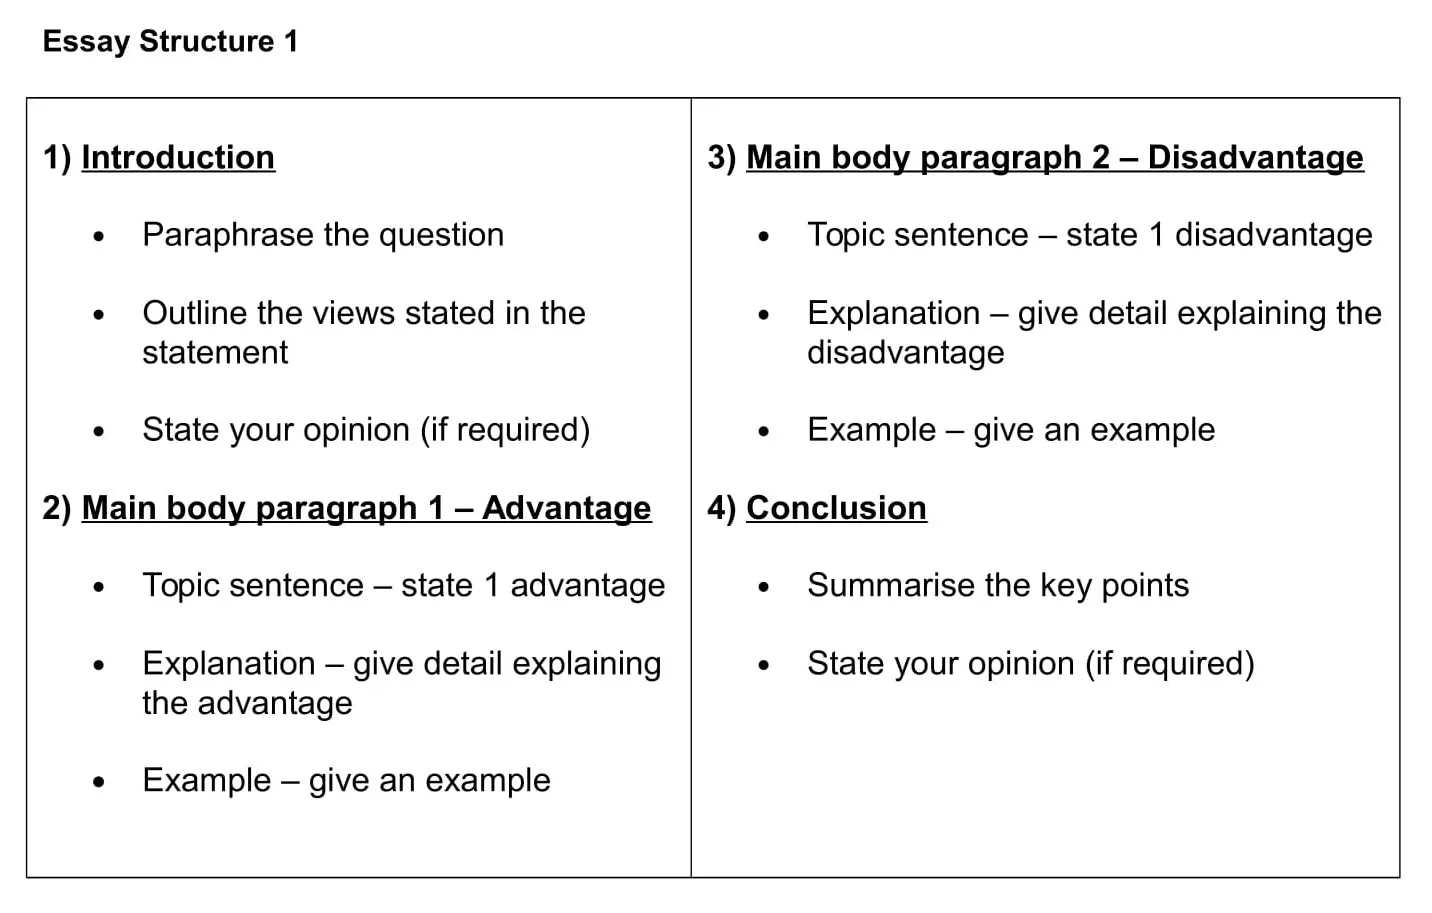 essay advantages and disadvantages structure